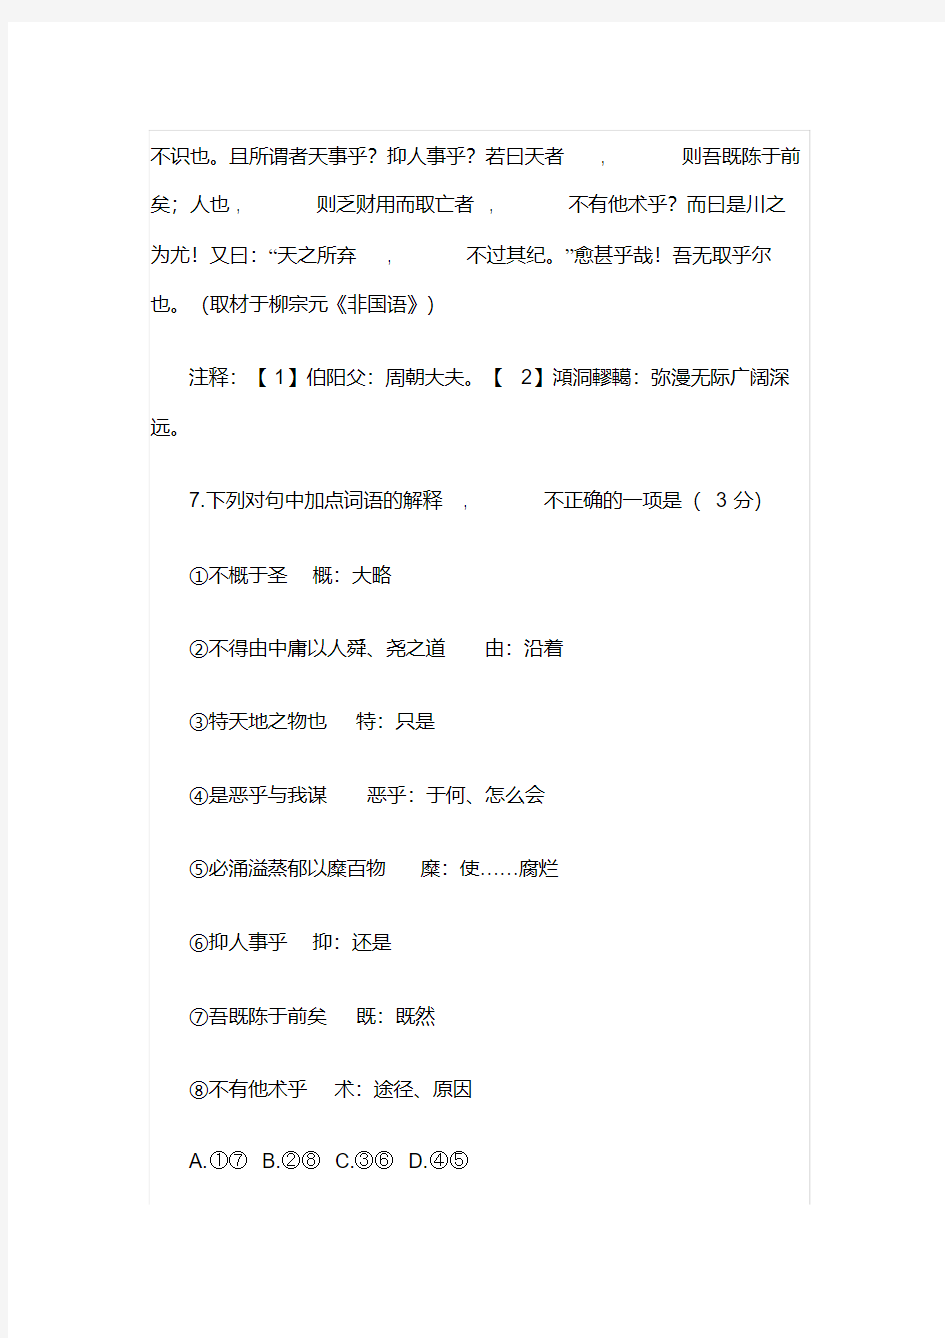 2019北京高考语文文言文答案详解(20200616221723)